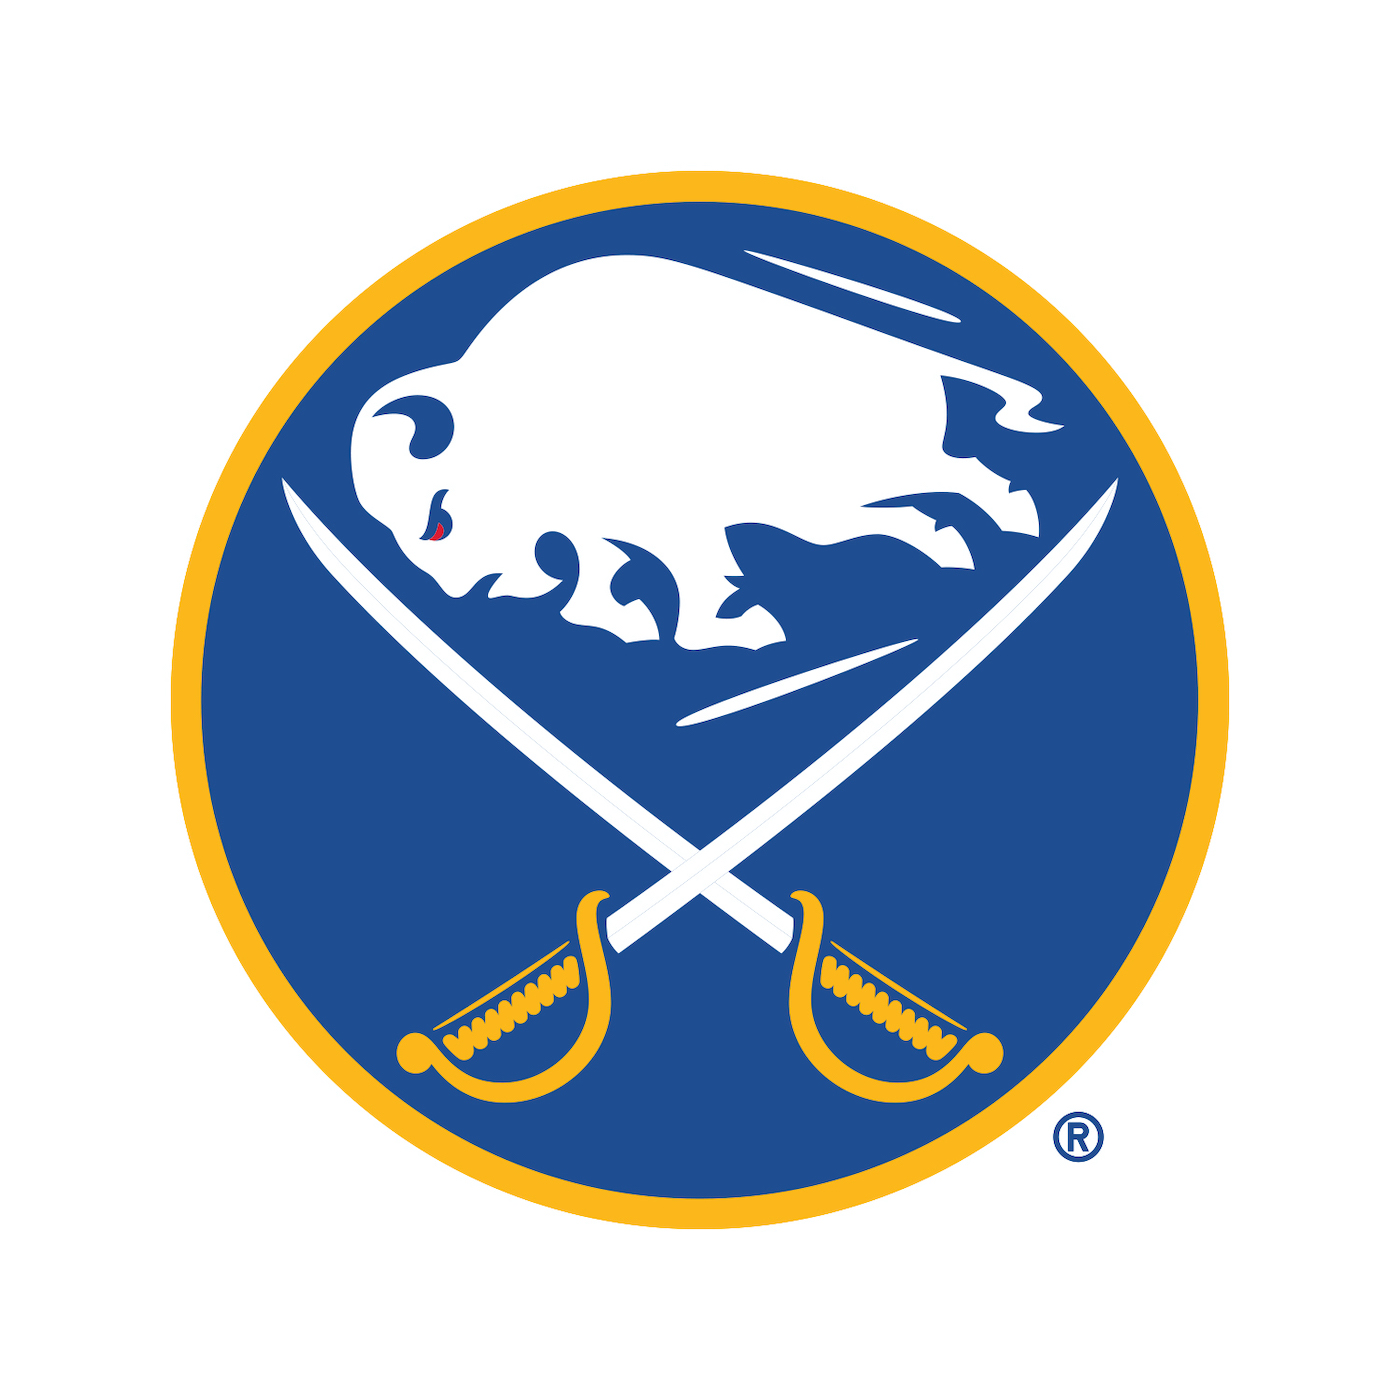 Buffalo Sabres logo courtesy of the Buffalo Sabres PR department and Pegula Sports & Entertainment